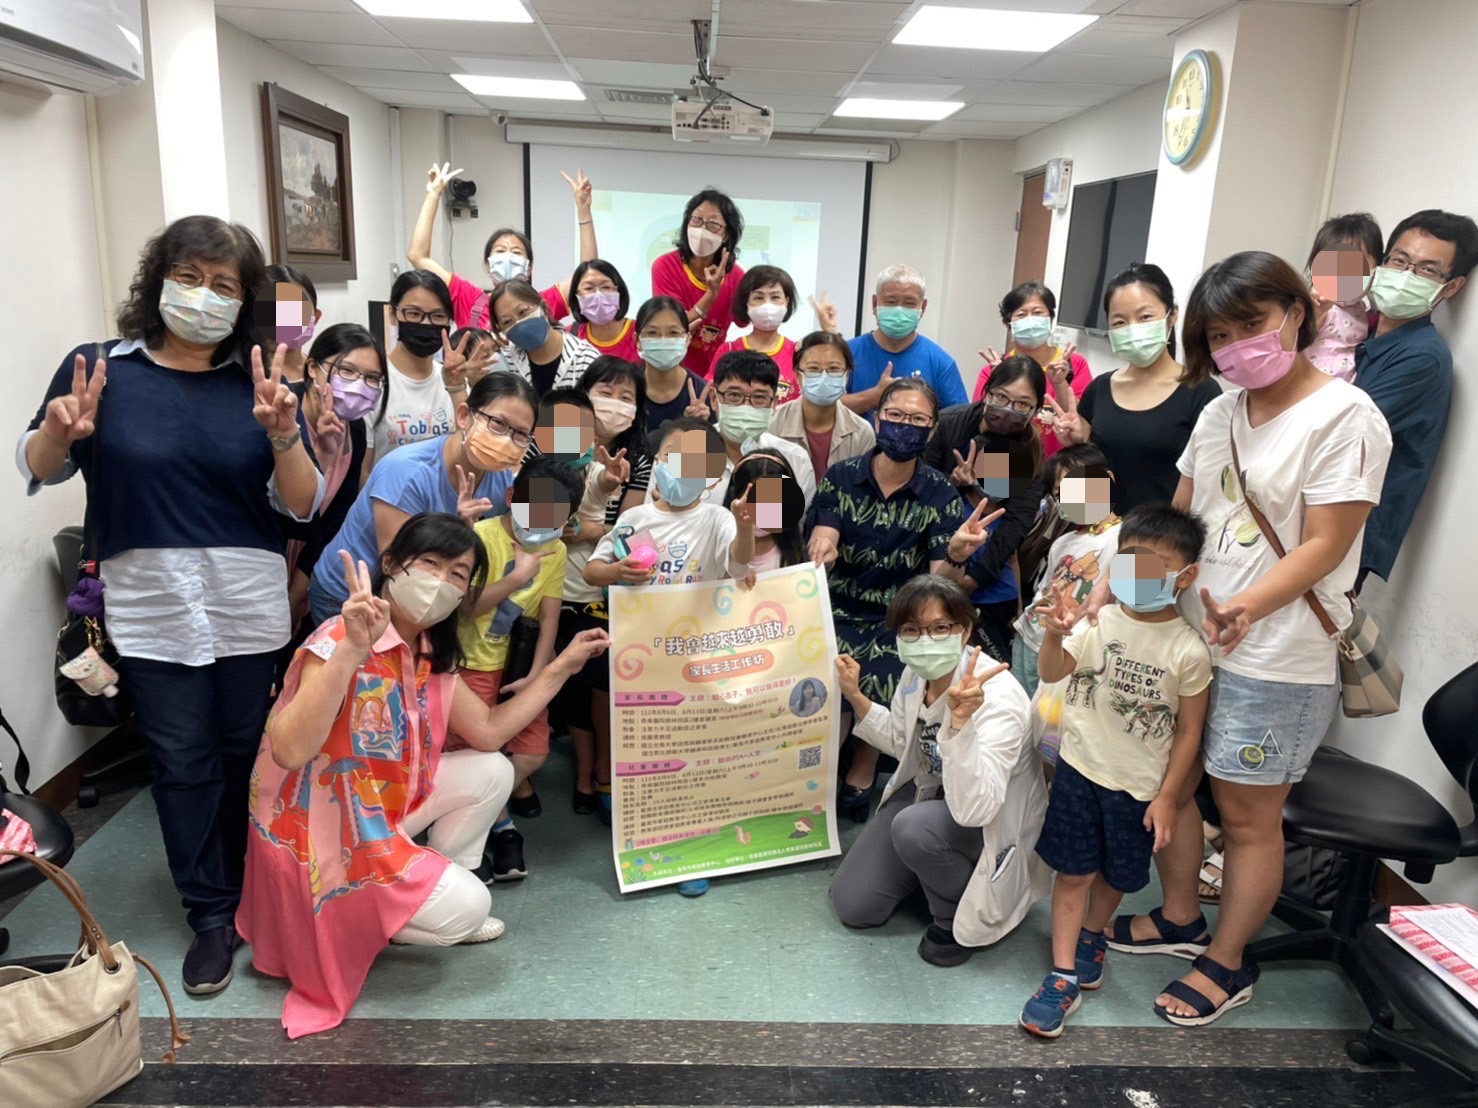 臺南市家庭教育中心伴家長在學習教養路上越來越勇敢